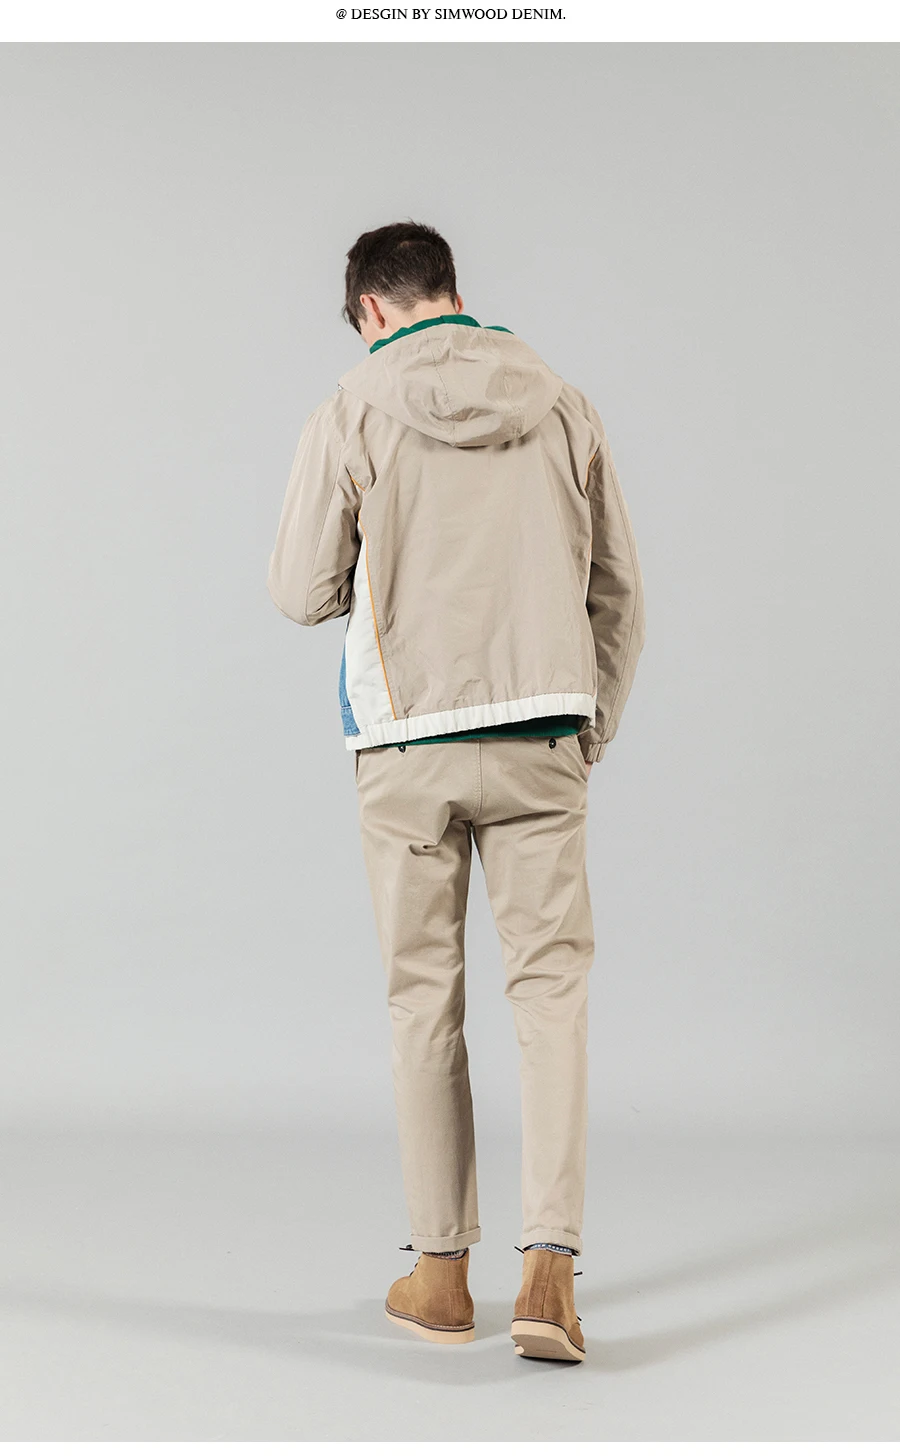 SIMWOOD/ г. Осенне-зимние джинсовые куртки с капюшоном и панелями, мужские Модные контрастные цвета, уличная одежда в стиле хип-хоп, пальто пэчворк, Высококачественная брендовая одежда, SI980536